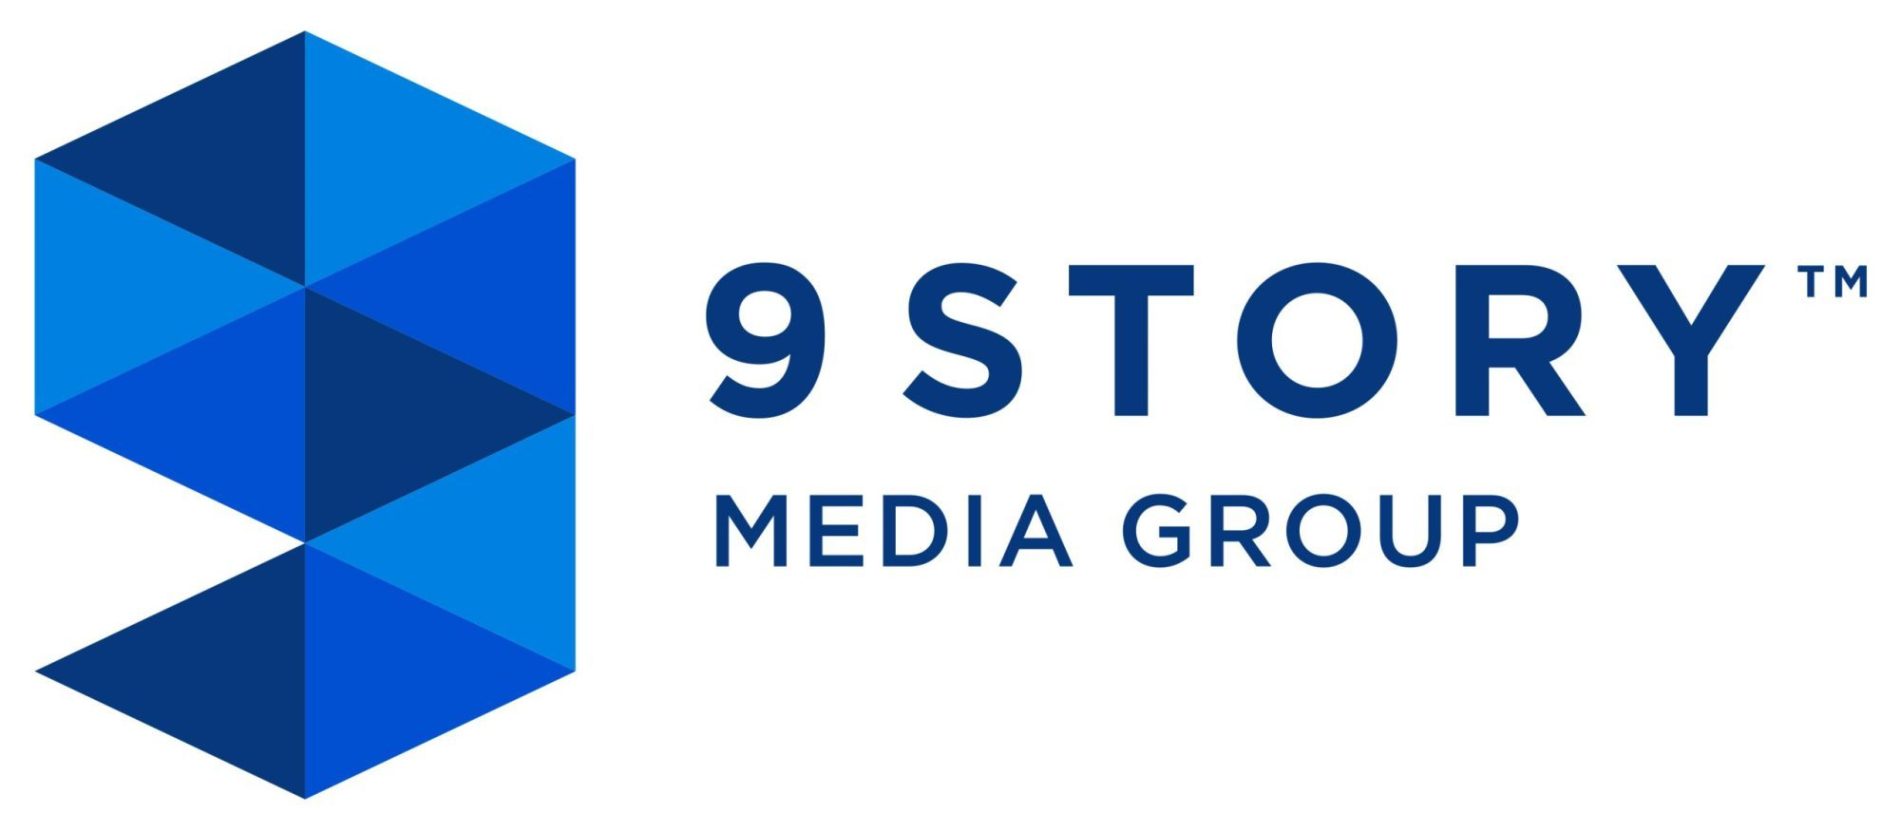 9story media group large logo